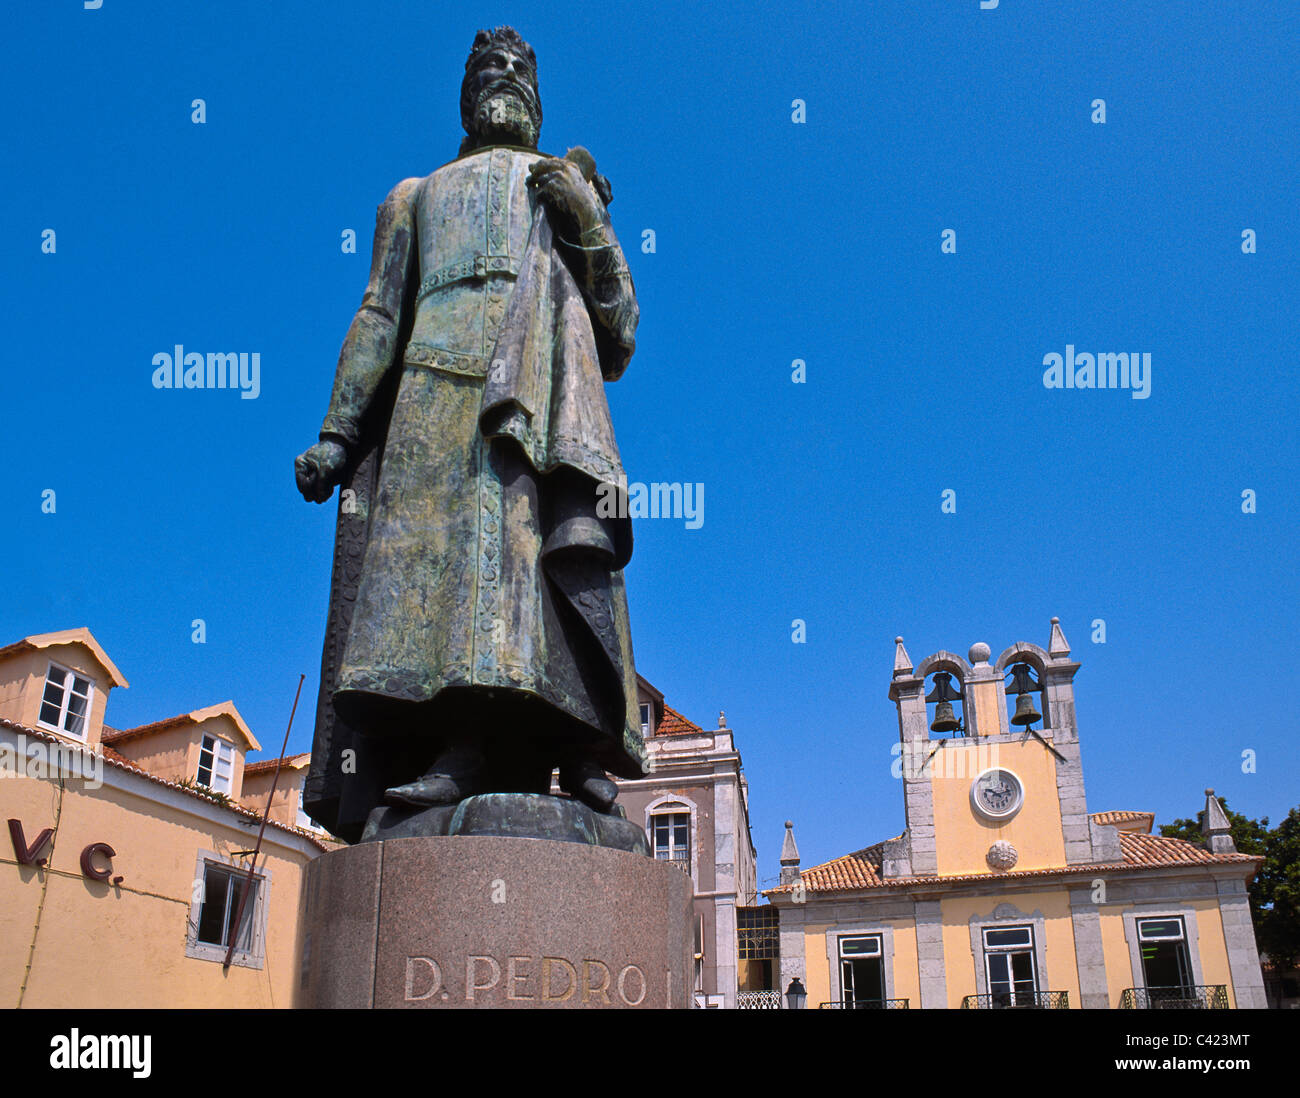 Statua di Dom Pedro I, primo imperatore e fondatore del Brasile e il re del Portogallo, noto come Dom Pedro IV, Cascais, Portogallo Foto Stock